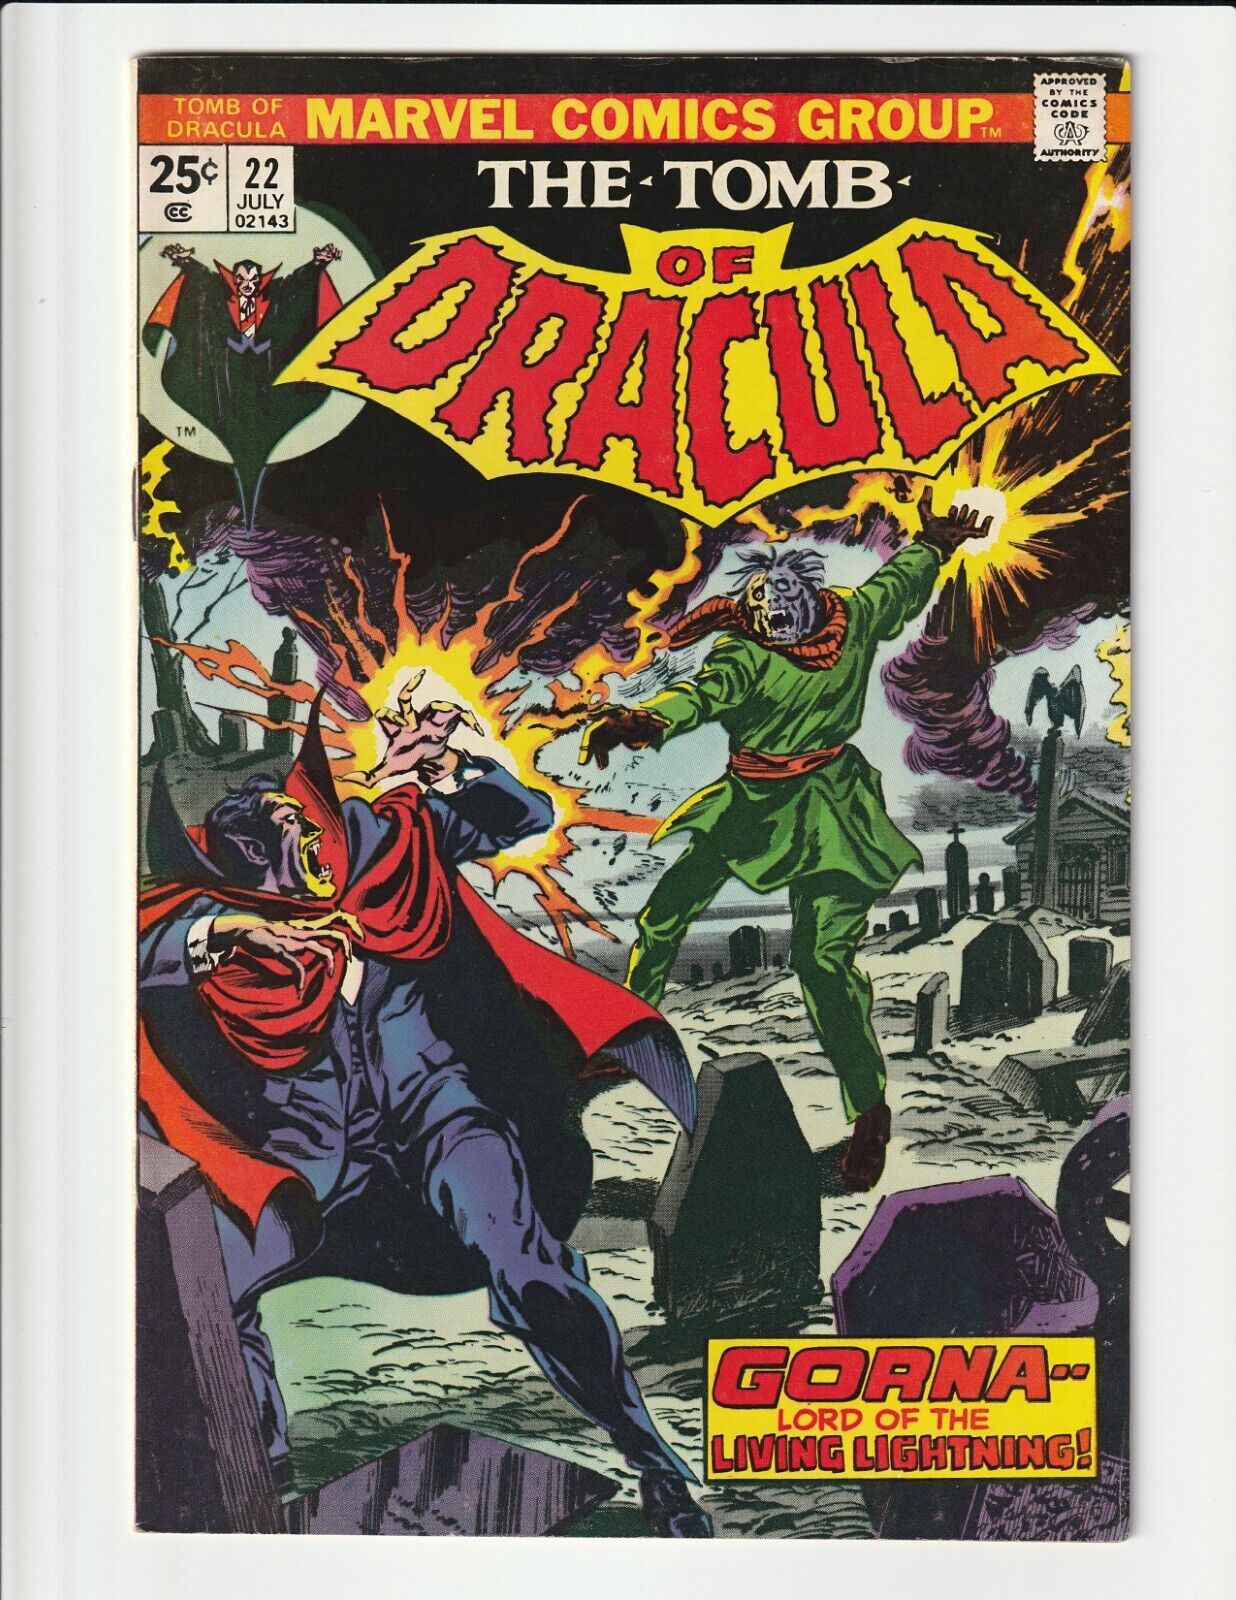 TOMB OF DRACULA #22 (1974) VF- MARVEL COMICS